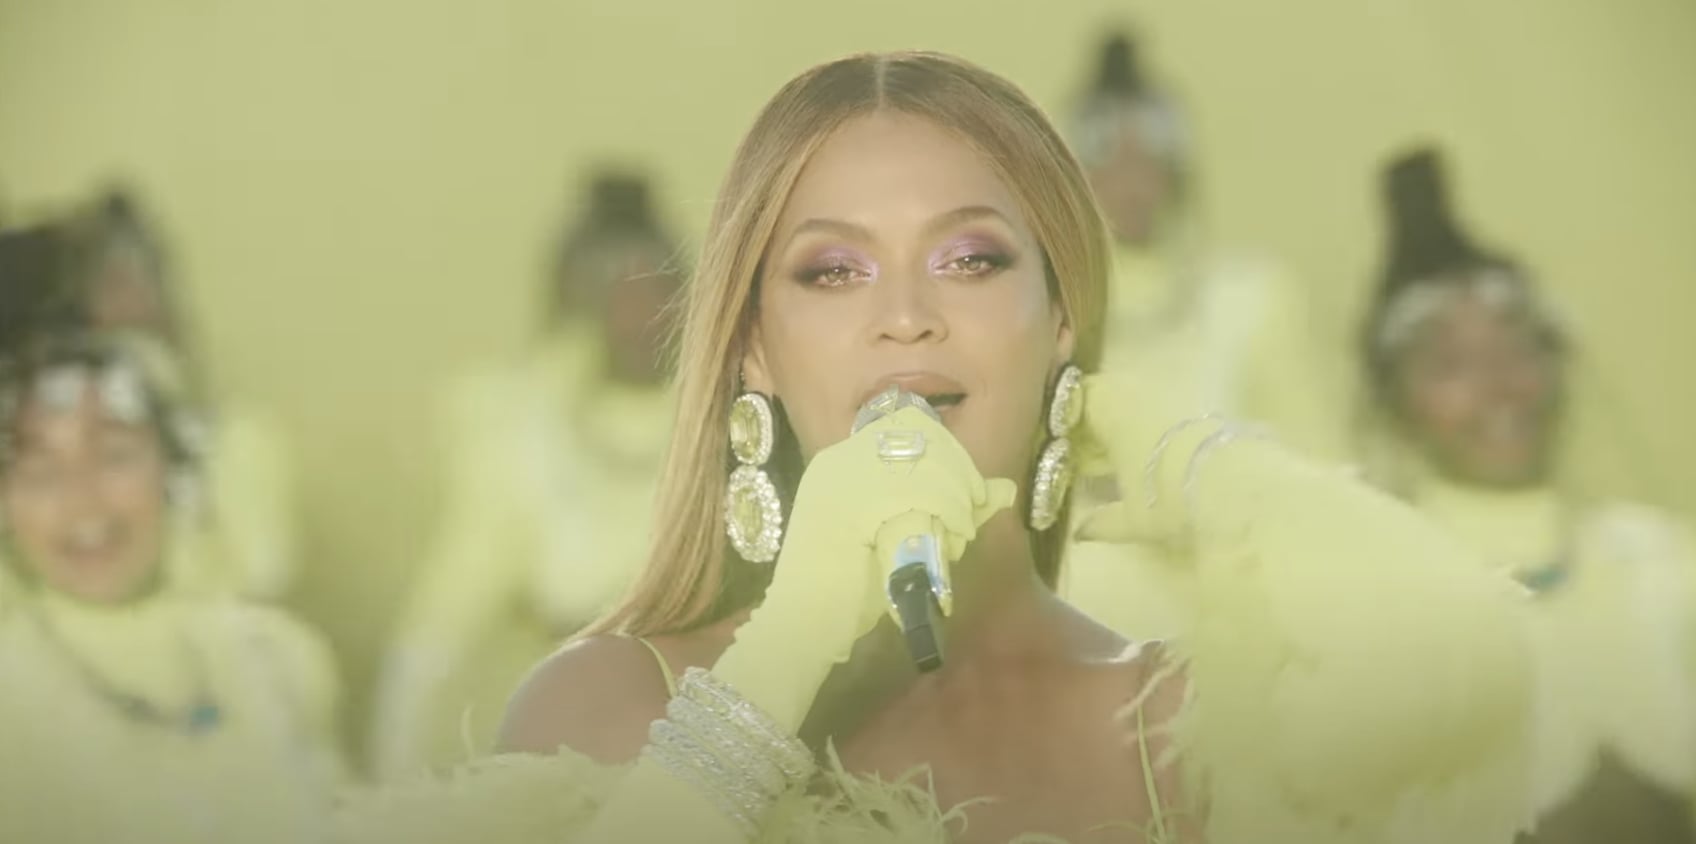 Beyoncé's memorable Oscar performance has Hungarian ties too